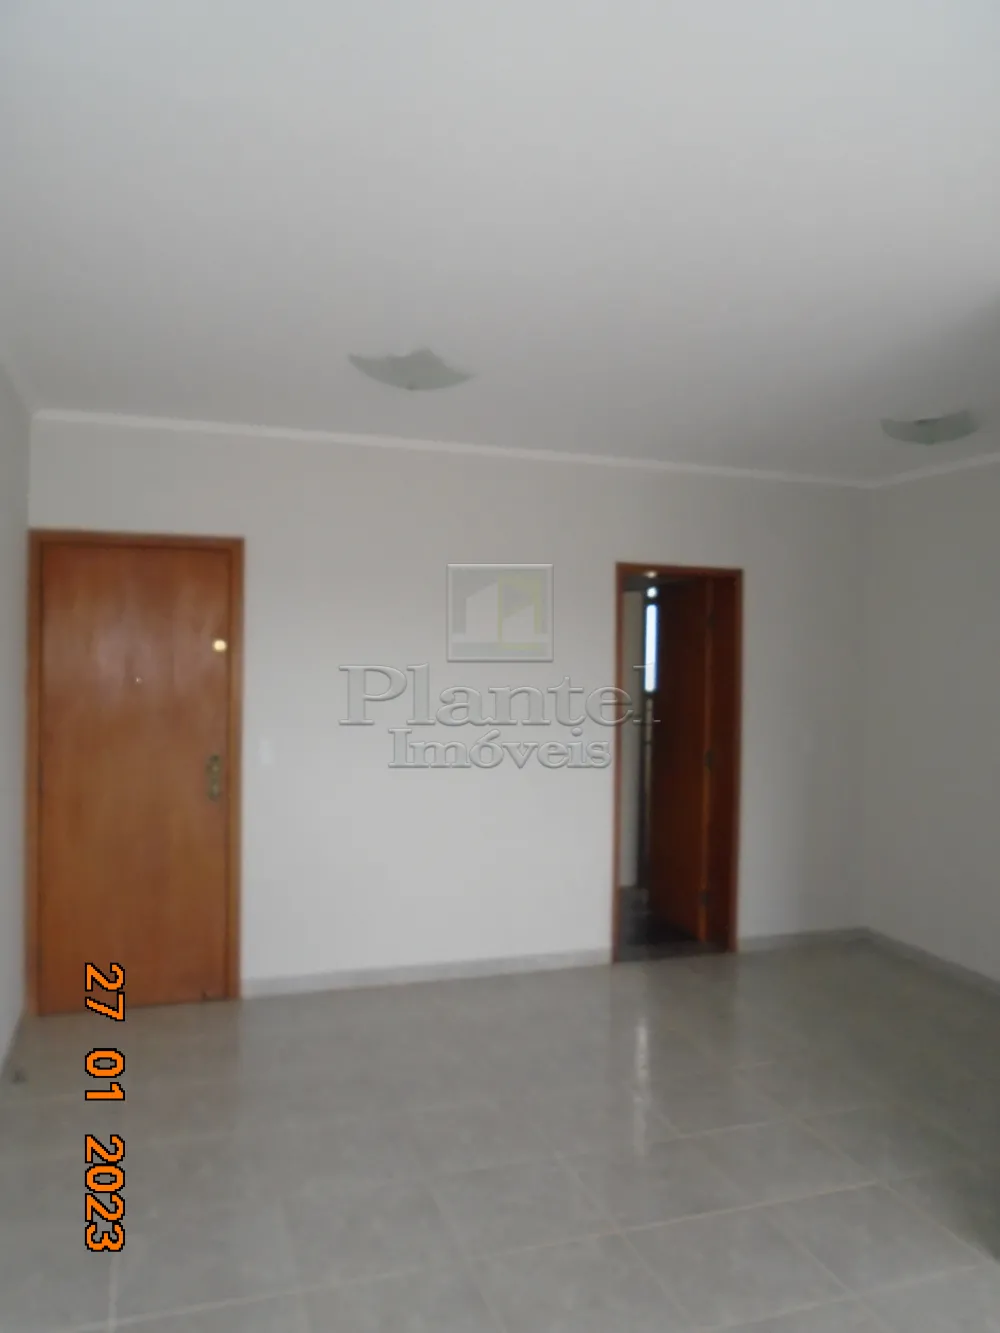 Imobiliária Ribeirão Preto - Plantel Imóveis - Apartamento - Presidente Médici - Ribeirão Preto